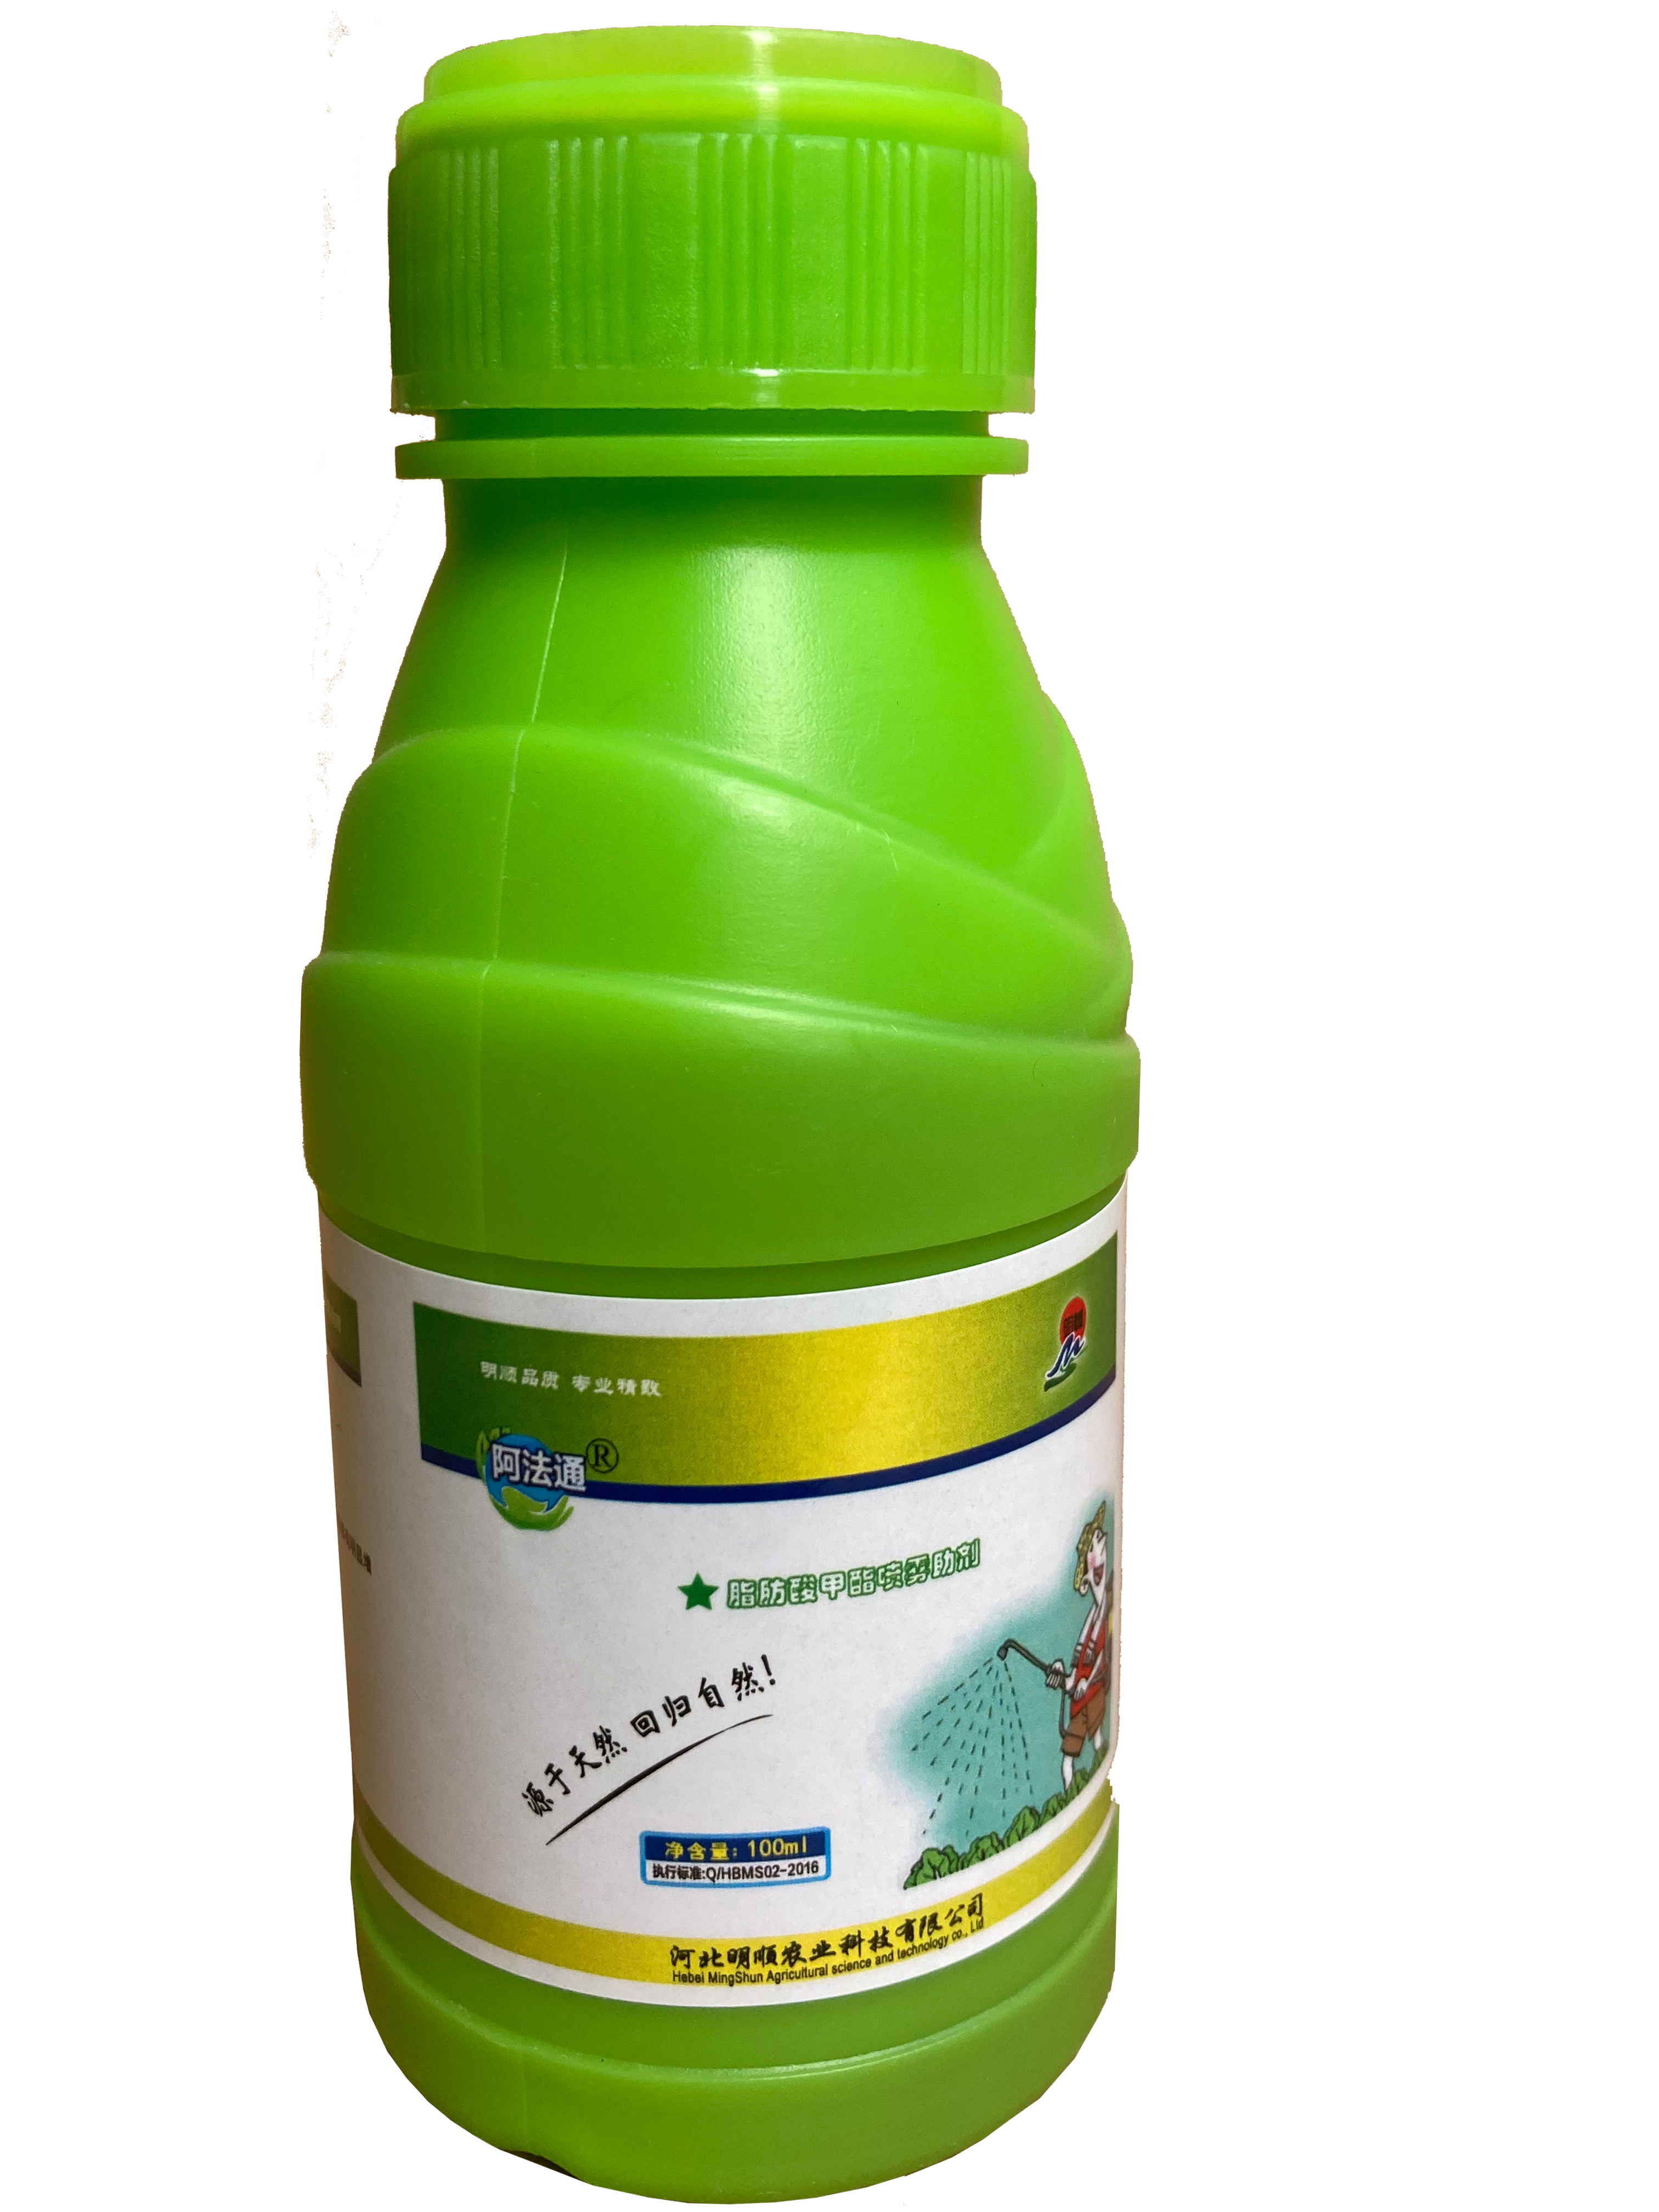 脂肪酸甲酯喷雾助剂-阿法通100ml 10元/瓶